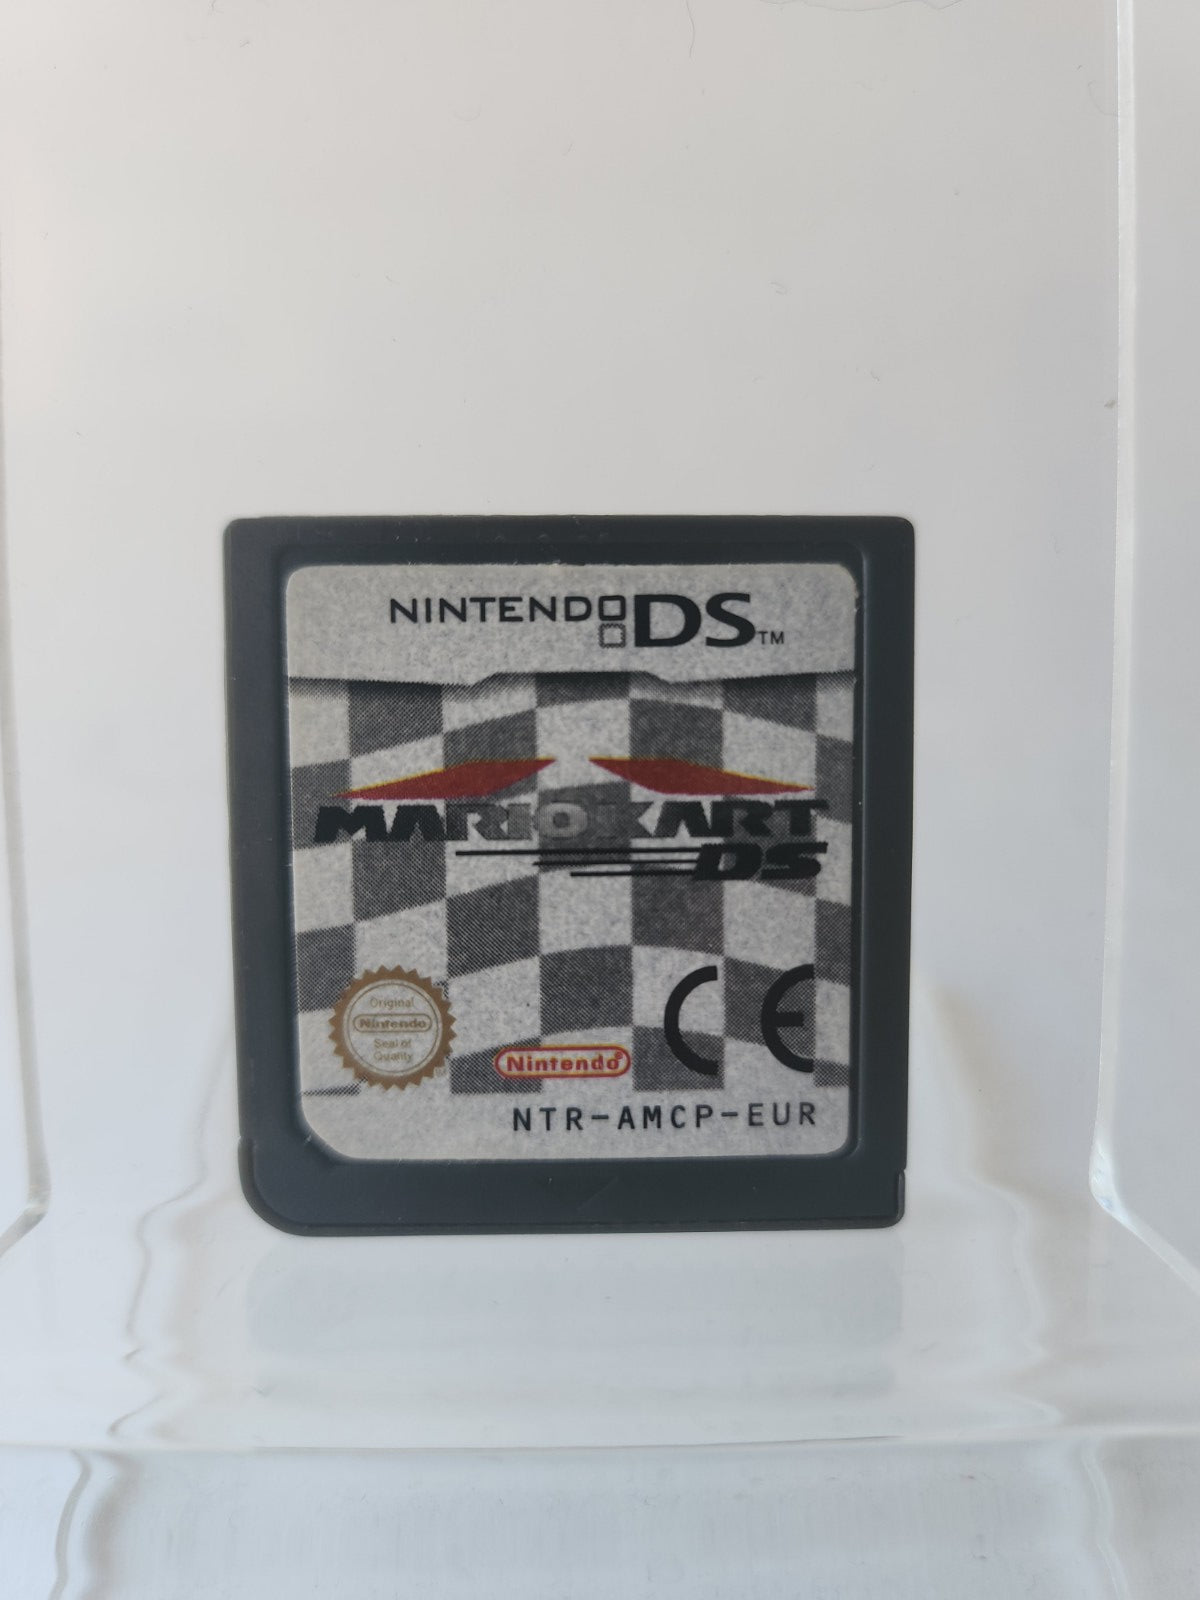 Mario Kart DS Nintendo DS